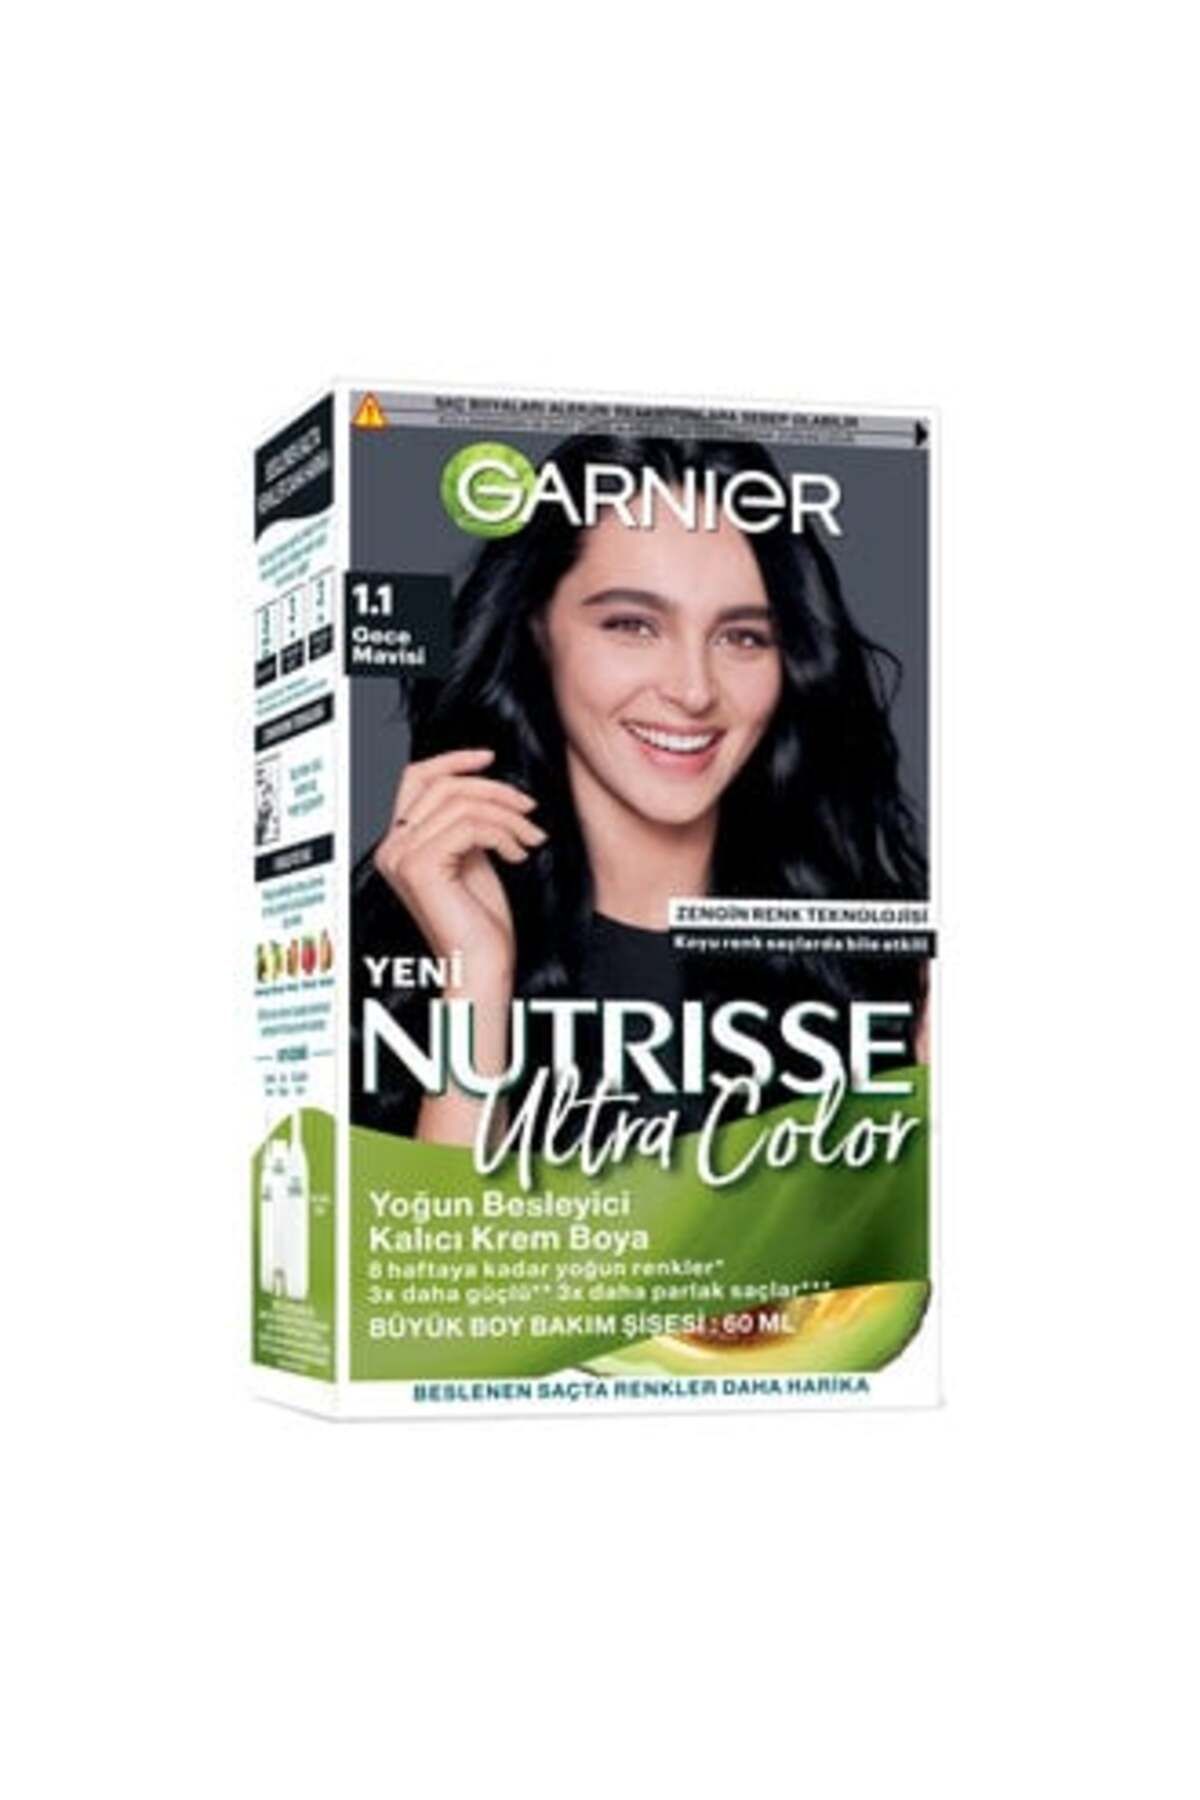 Garnier Nutrisse Ultra Color Saç Boyası1.1 Gece Mavisi ( 1 ADET )